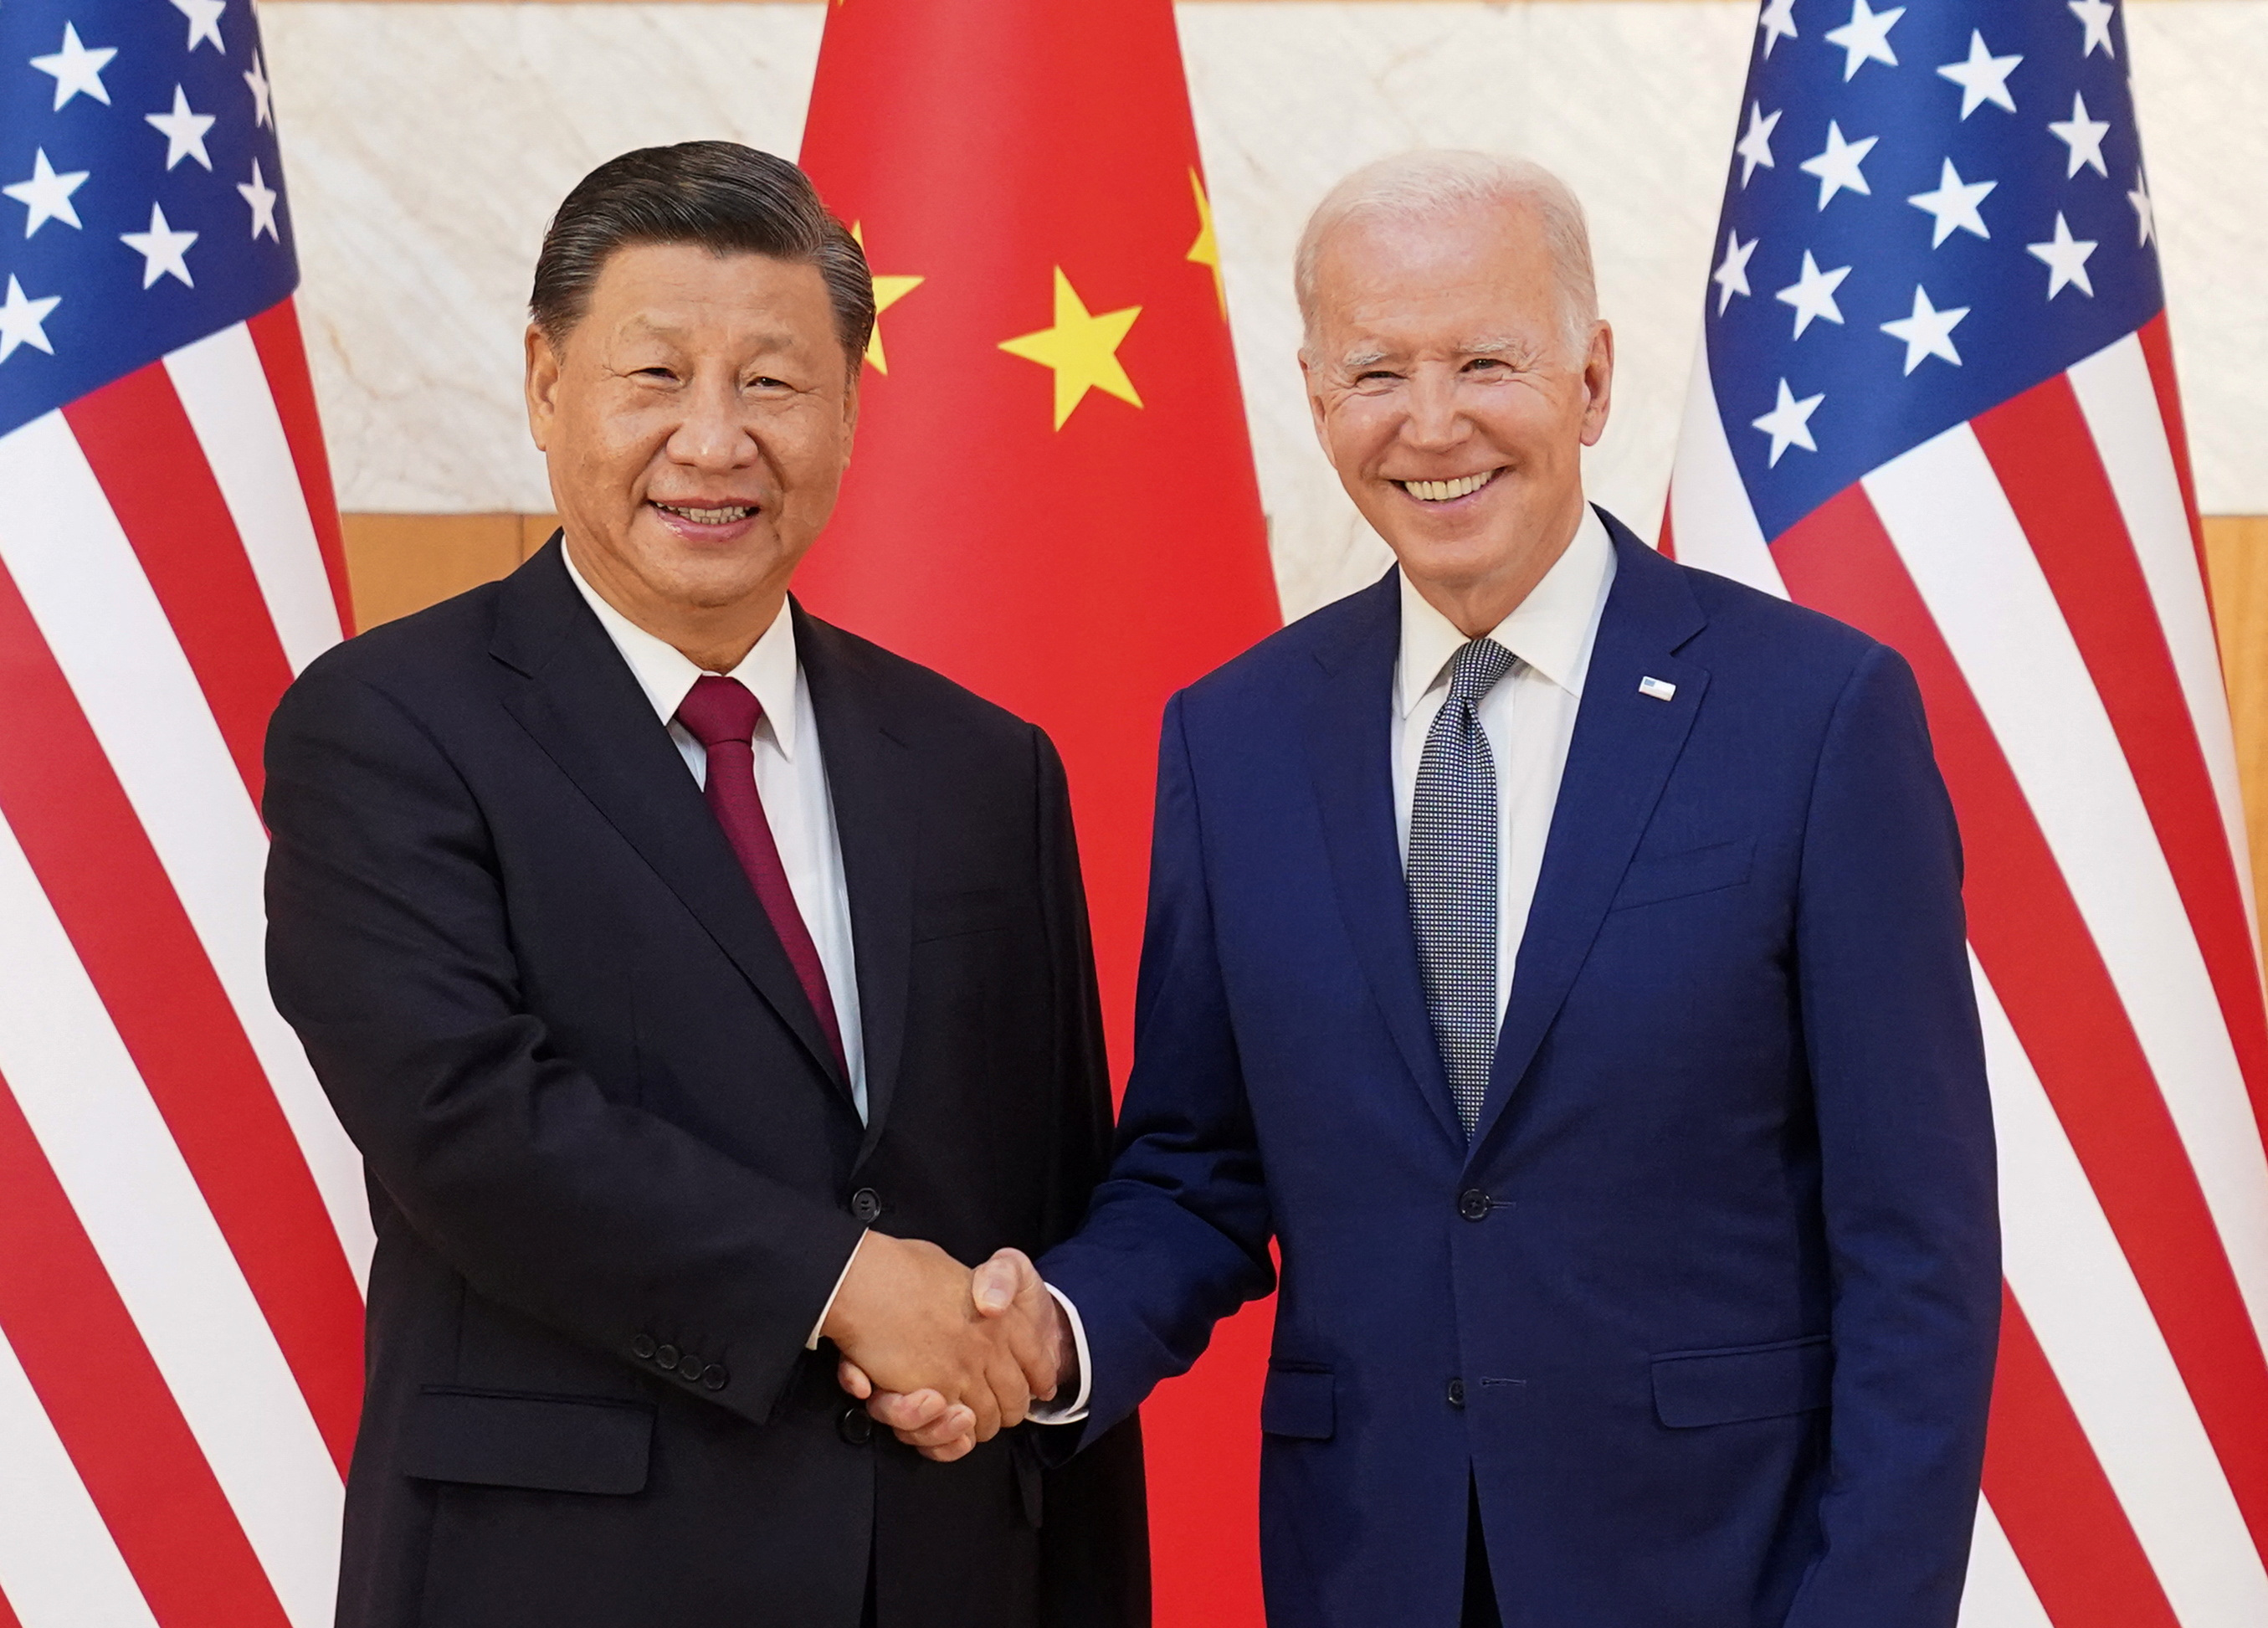 Tensions entre Washington et Pékin : Joe Biden et Xi Jinping calment le jeu